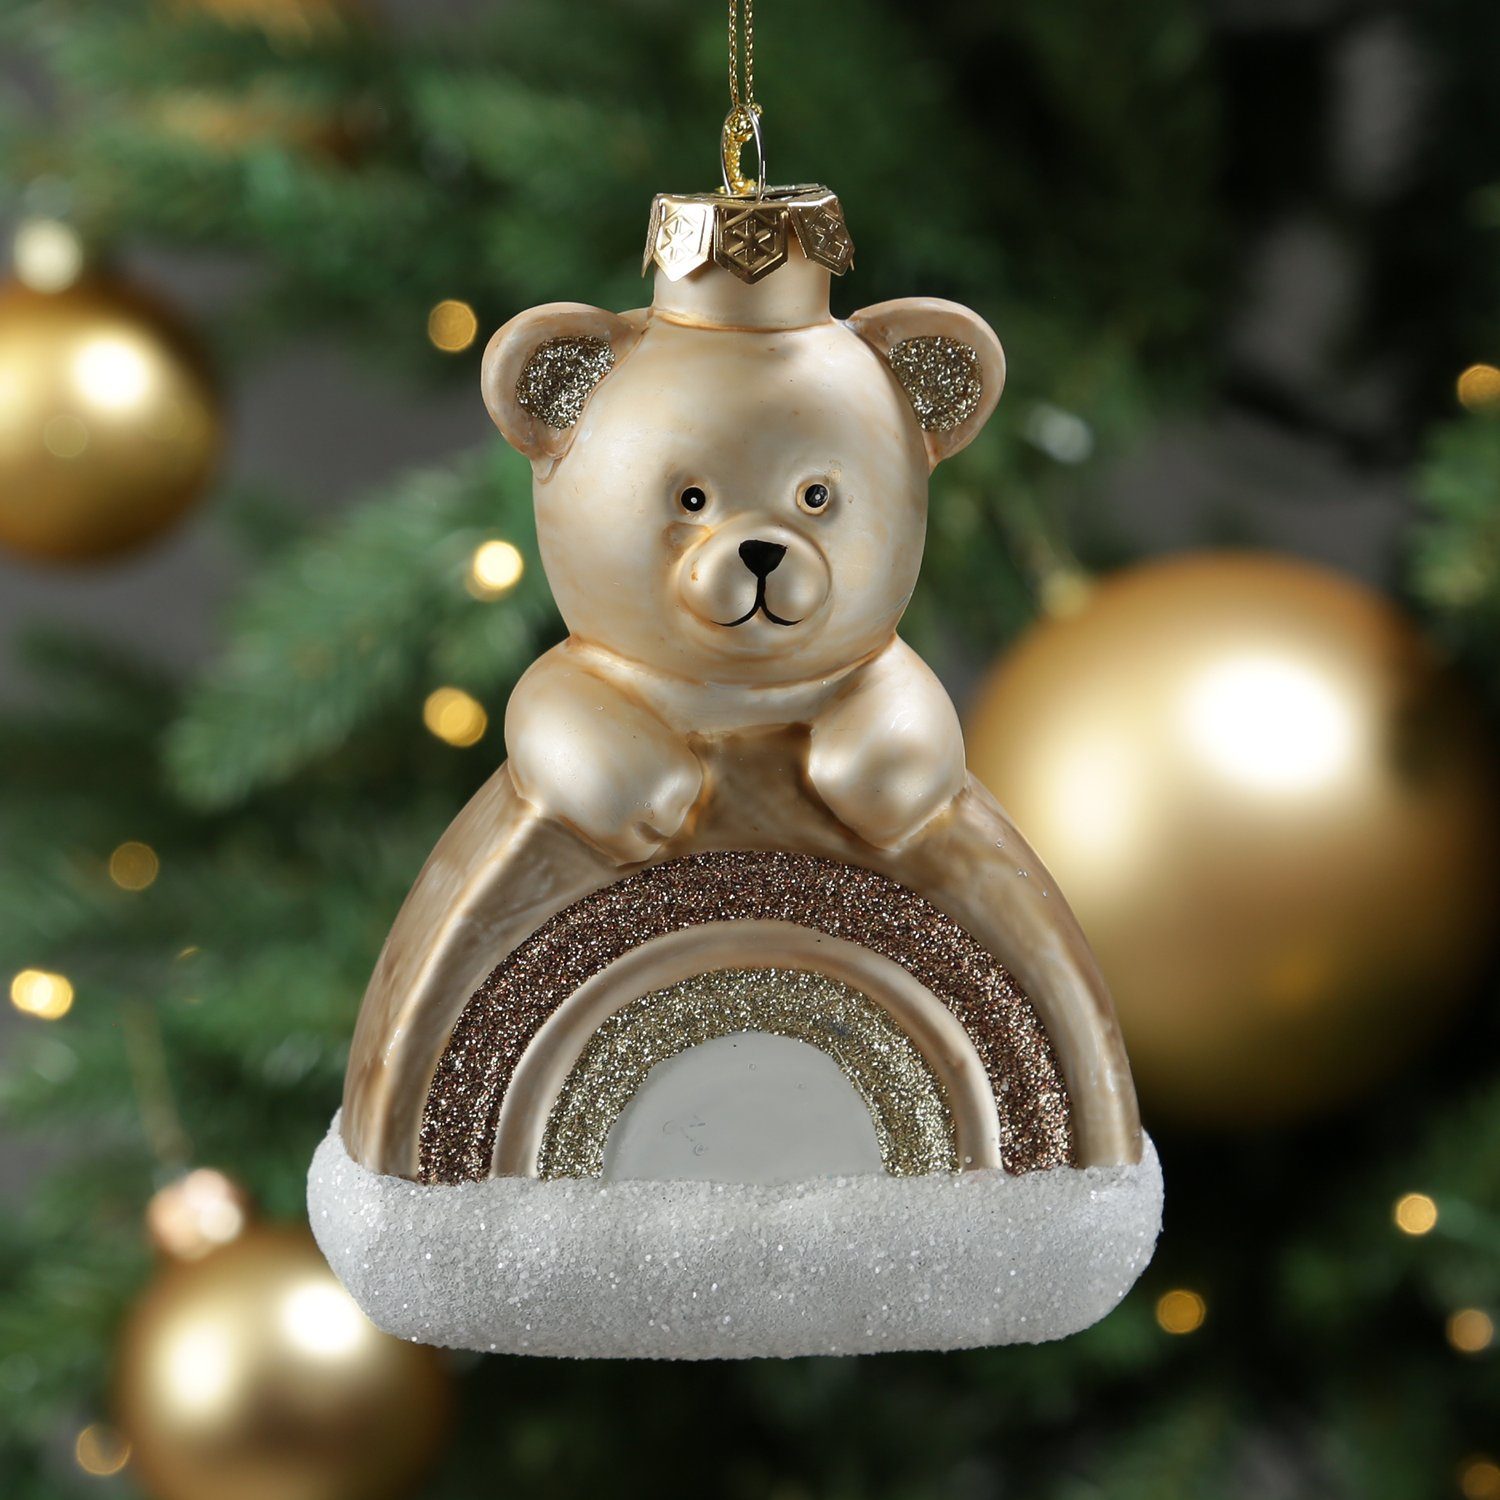 Teddybär H: Weihnachtsbaumschmuck MARELIDA 13,5cm Christbaumschmuck Regenbogen braun Glas mit